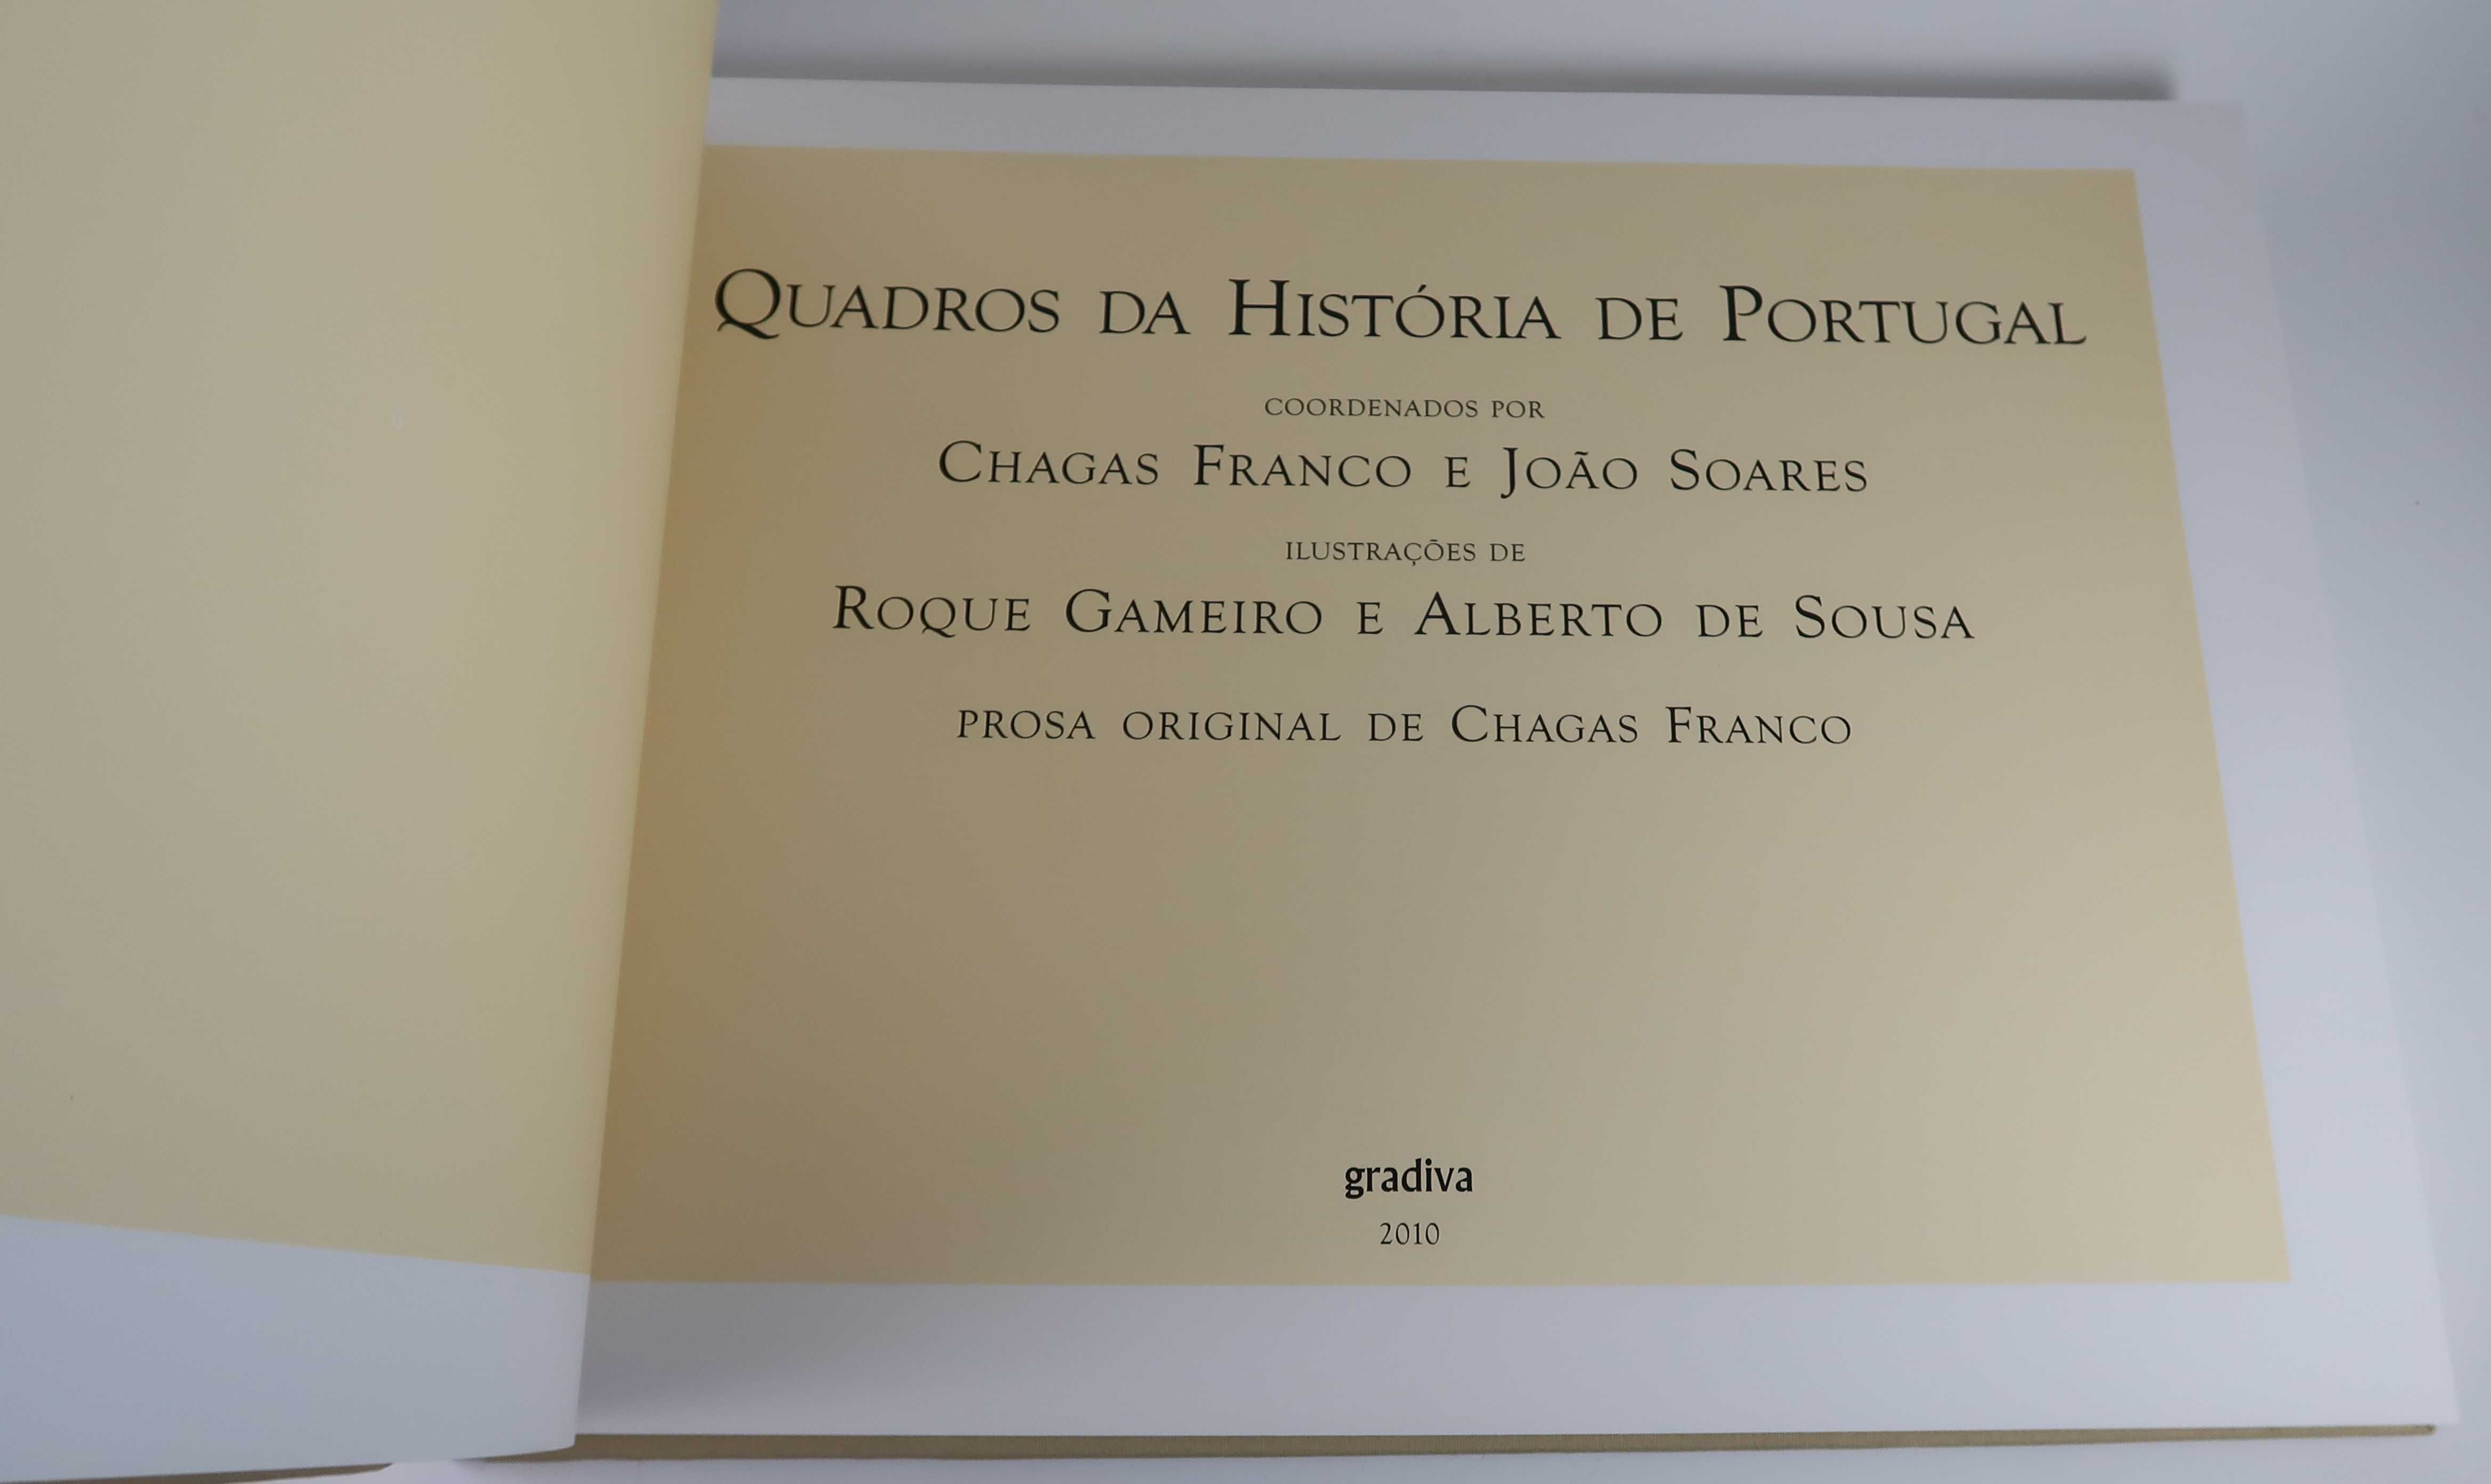 Quadros da História de Portugal - Gradiva